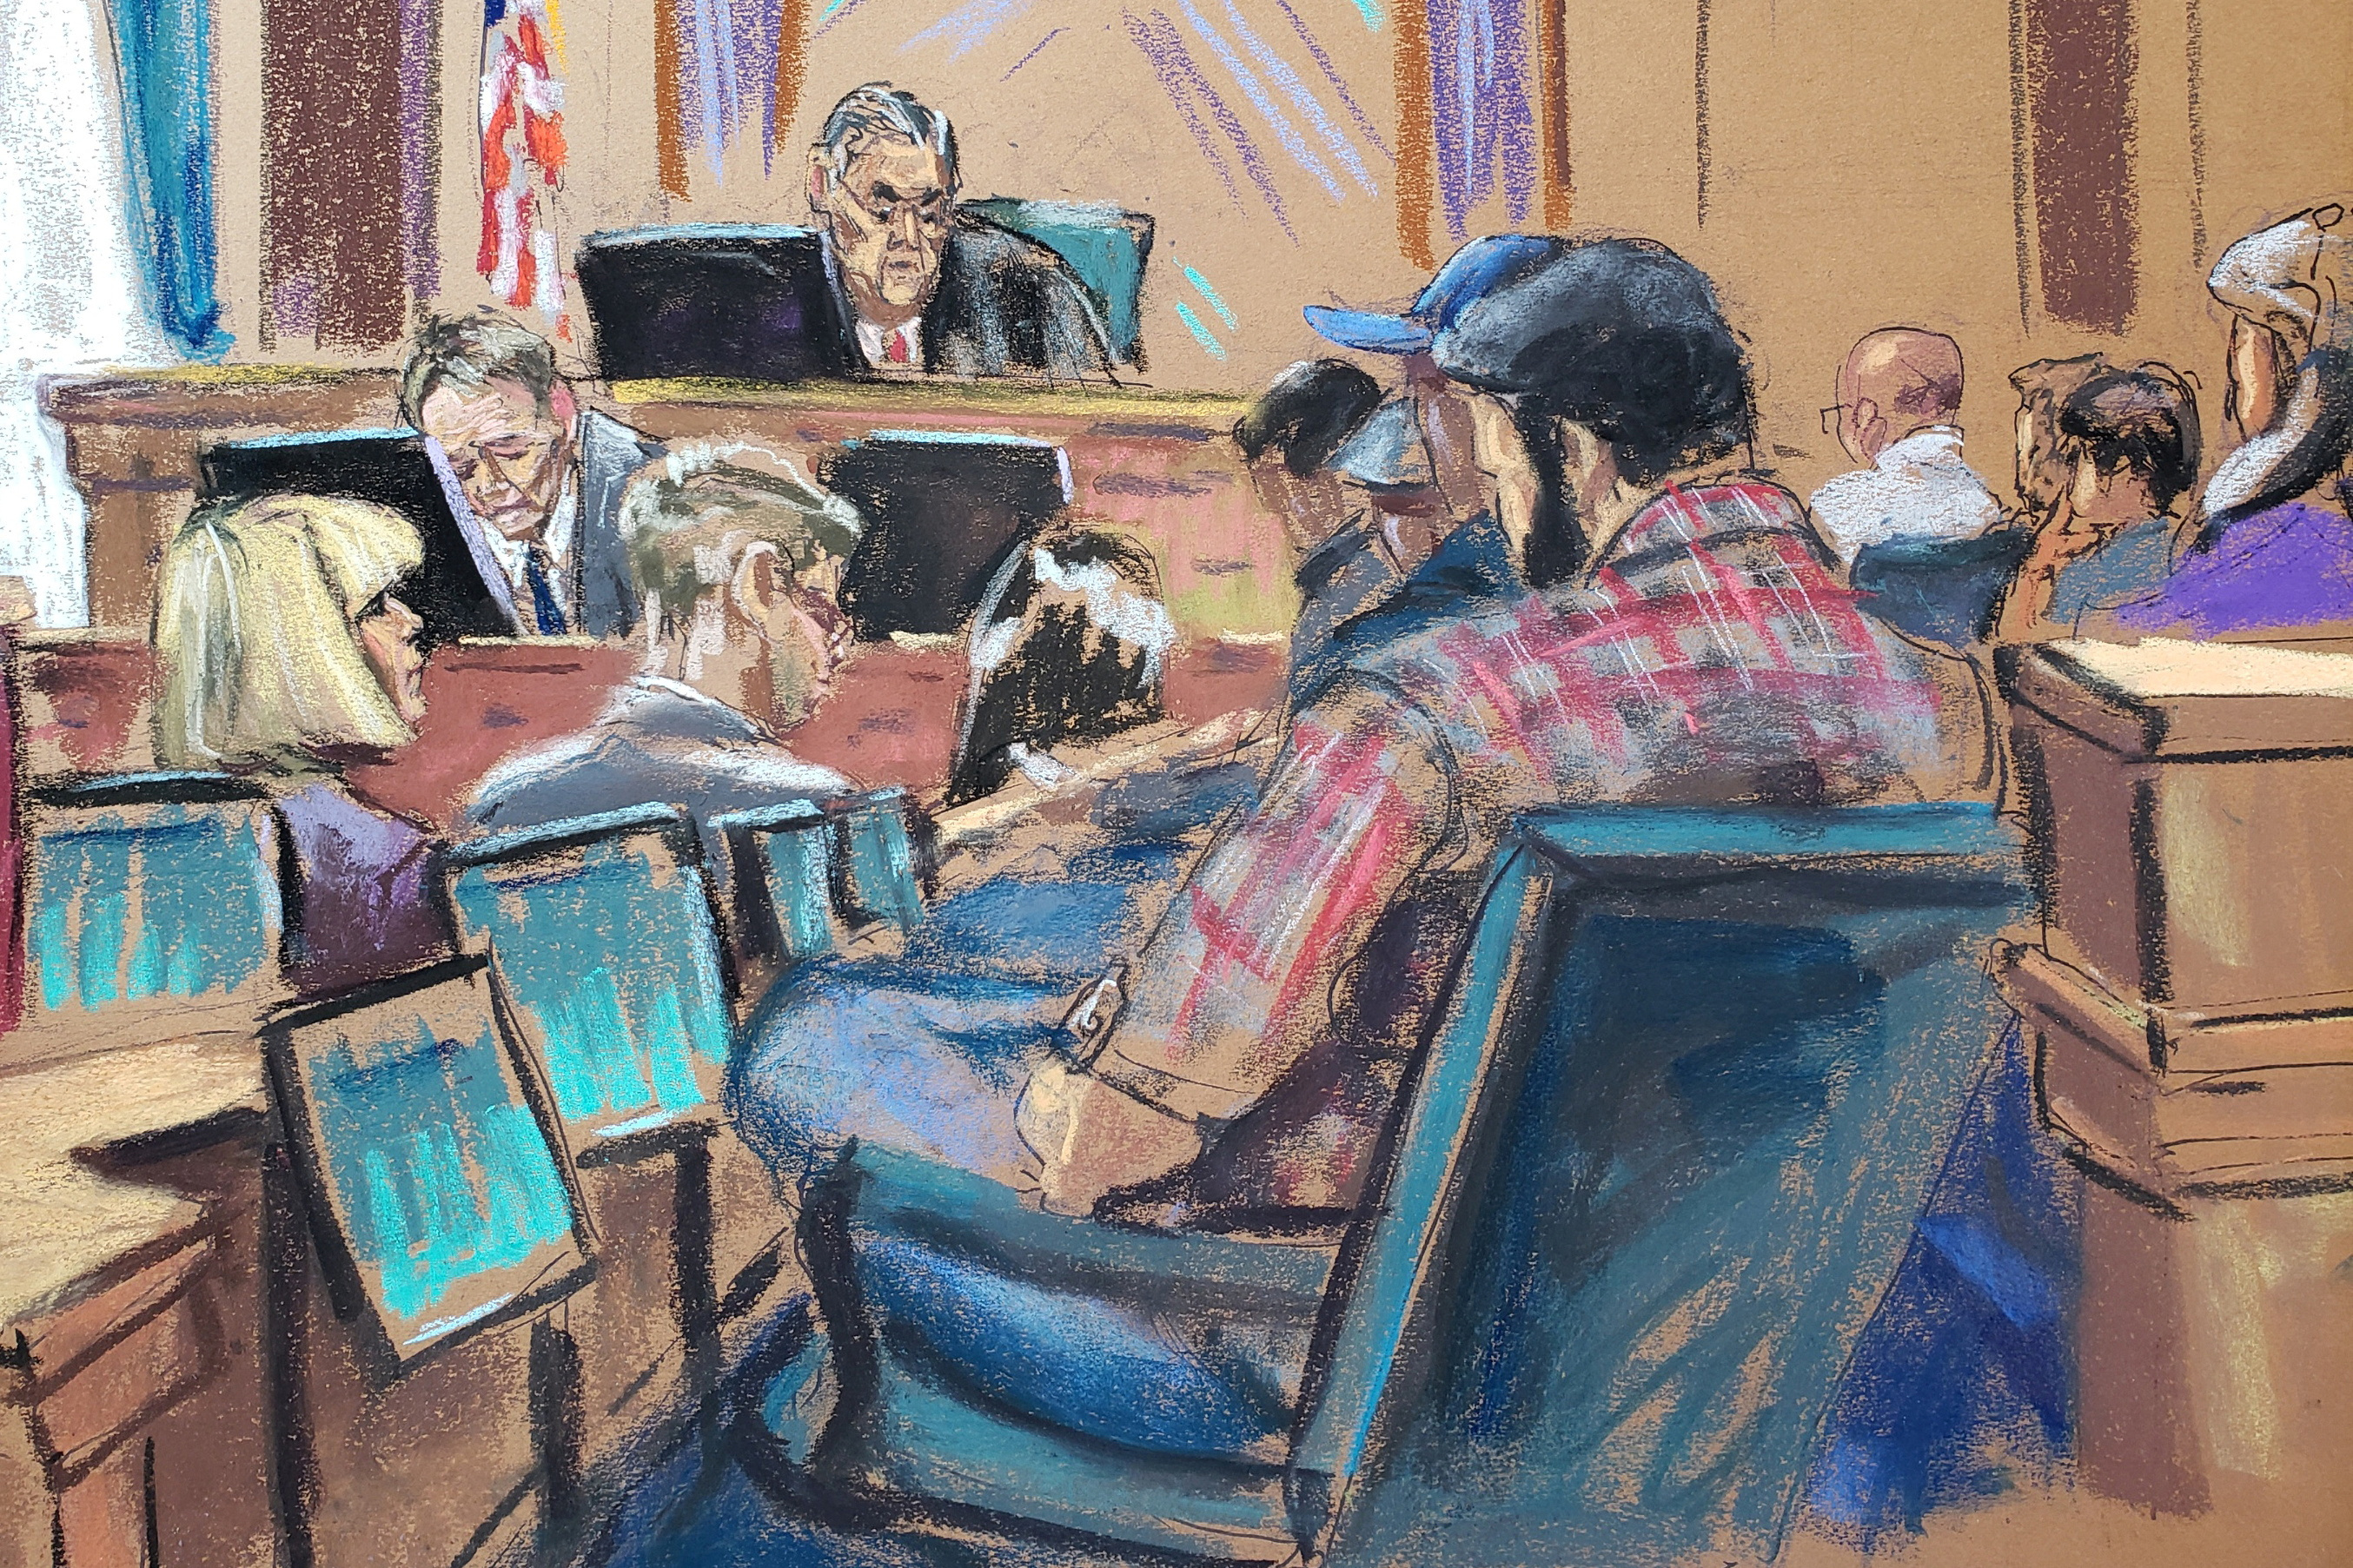 El juez de distrito de EEUU Lewis Kaplan instruye al jurado de seis hombres y tres mujeres sobre derecho mientras E. Jean Carroll observa, después de que terminaron los argumentos finales (REUTERS/Jane Rosenberg)